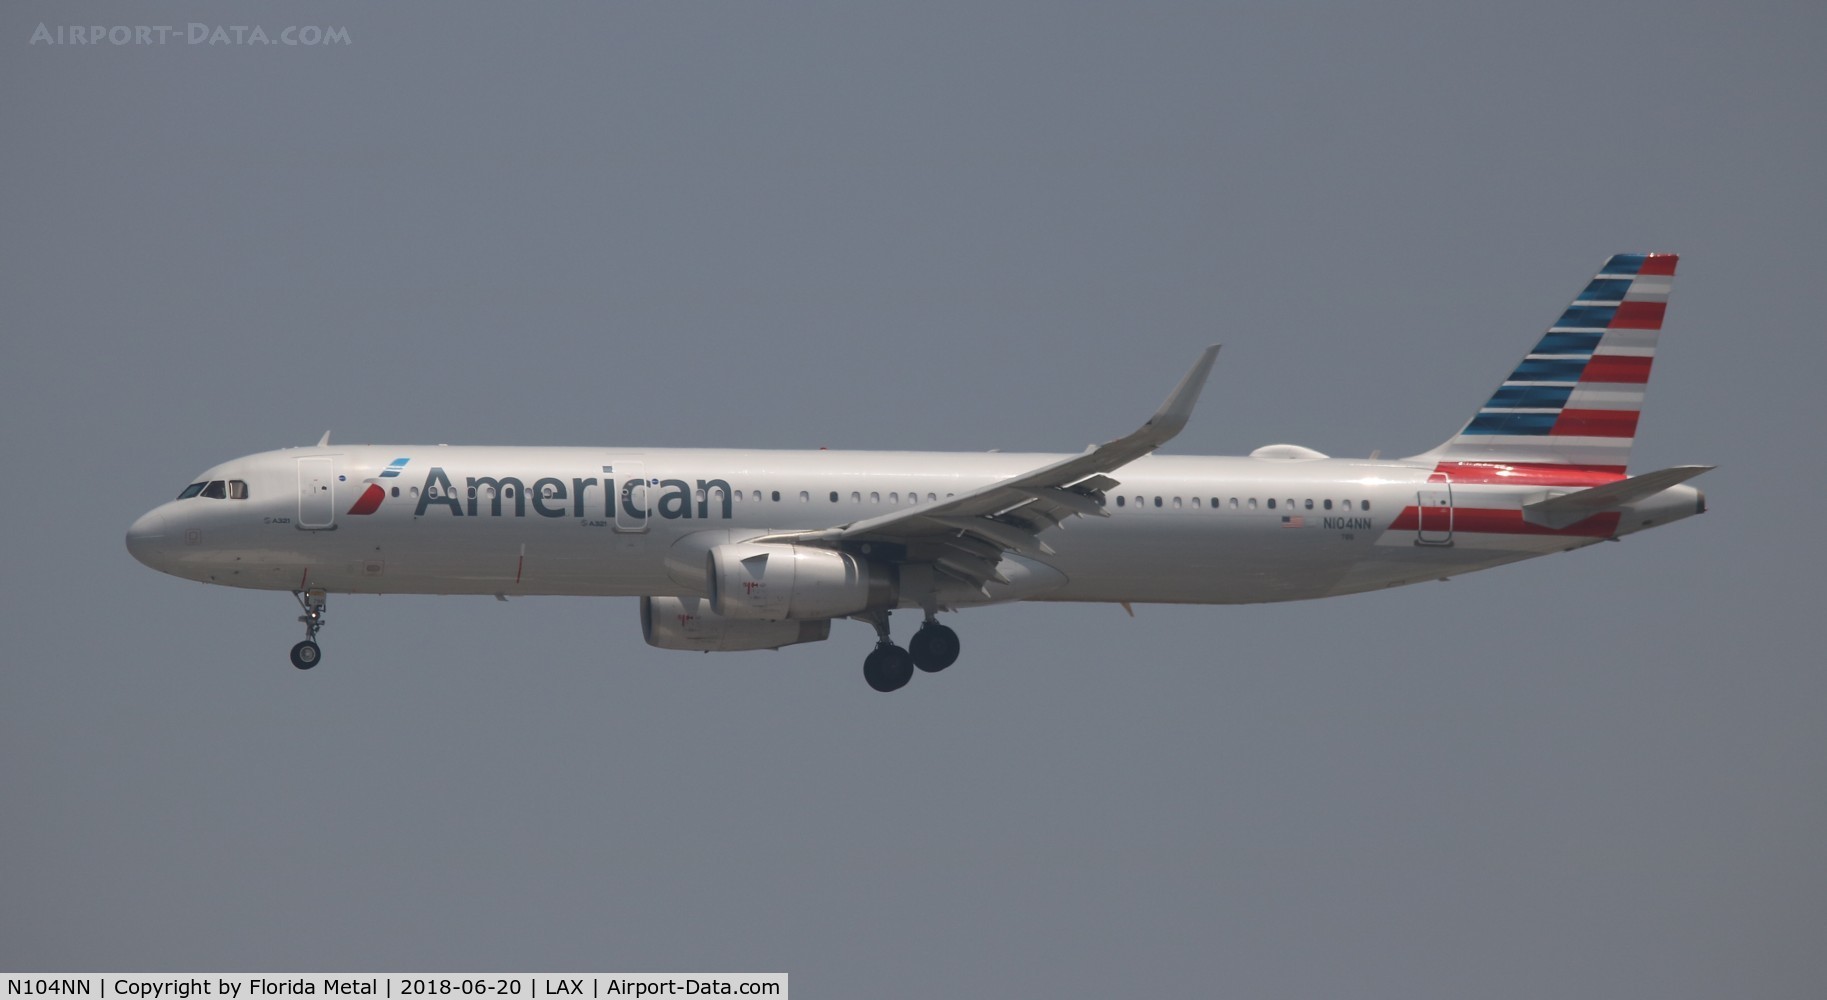 N104NN, 2013 Airbus A321-231 C/N 5895, American